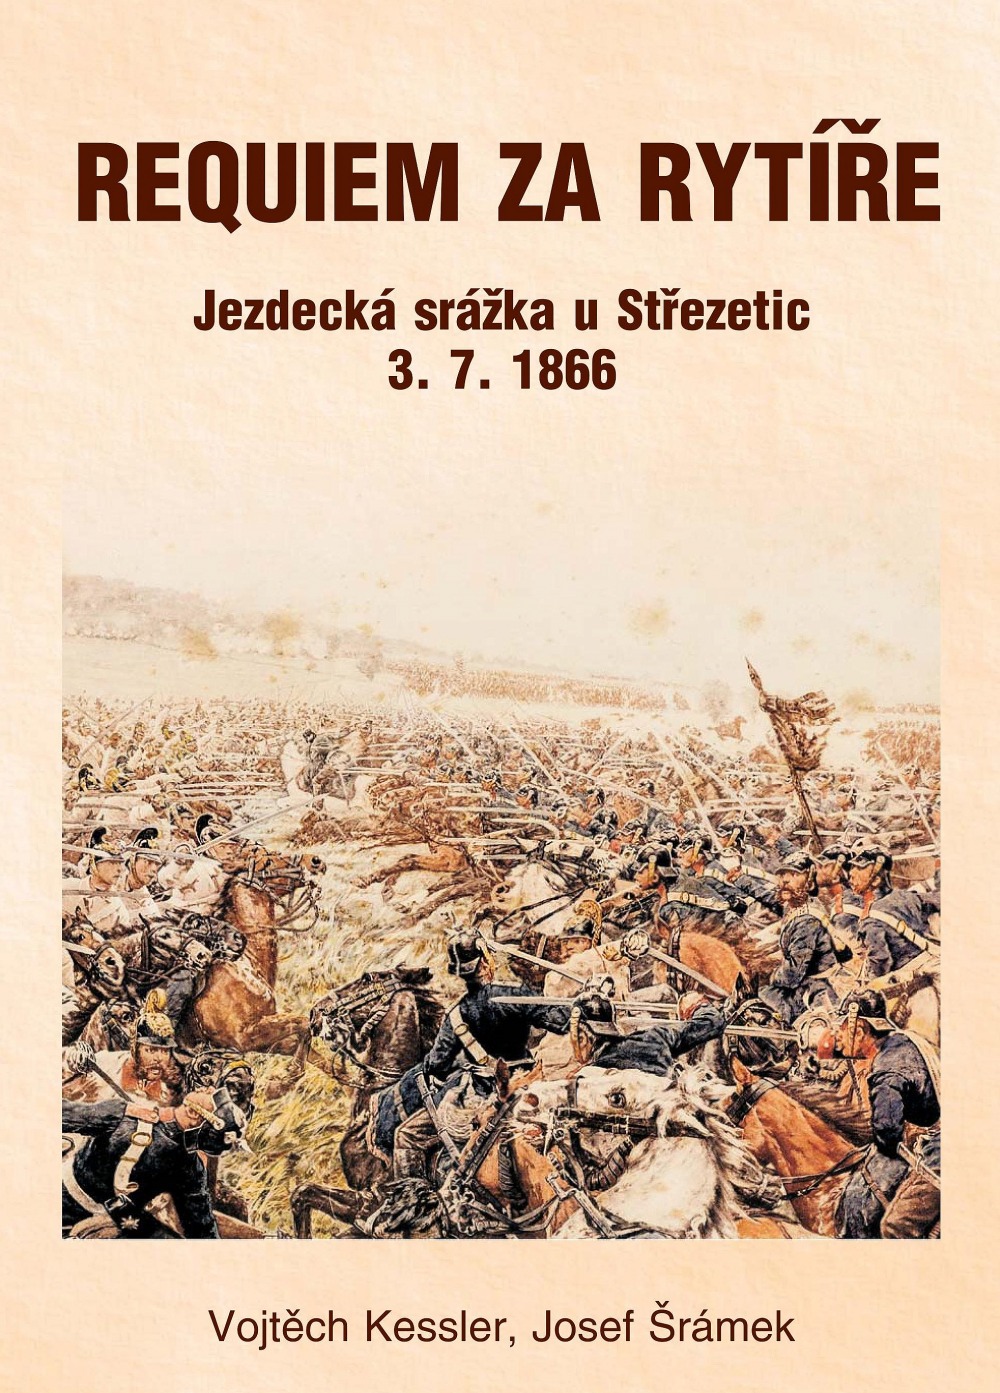 Requiem za rytíře: Jezdecká srážka u Střezetic 3. 7. 1866